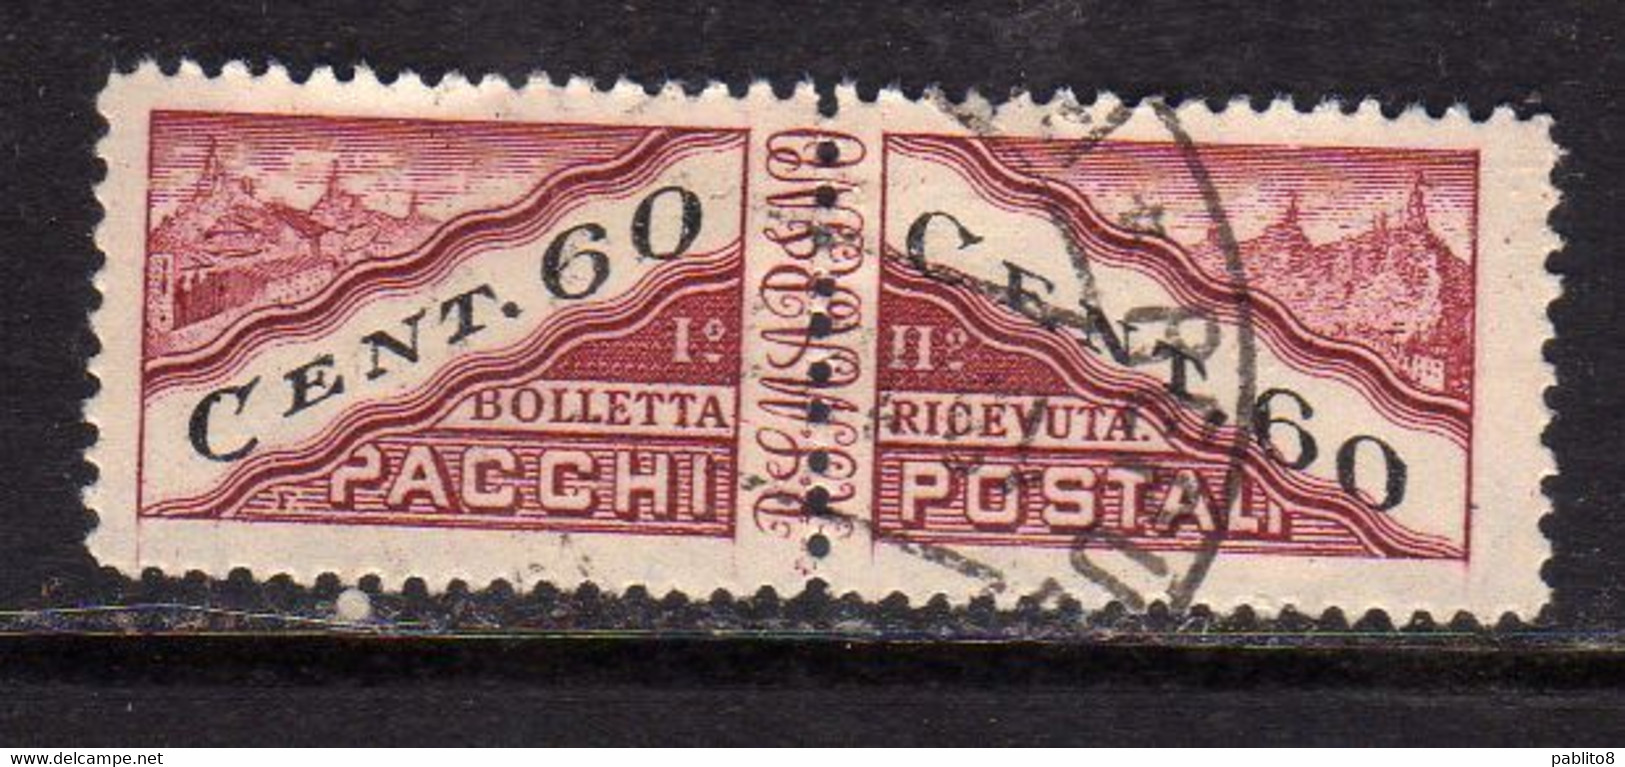 REPUBBLICA DI SAN MARINO 1945 PACCHI POSTALI PARCEL POST CENT. 60c USATO USED OBLITERE' - Paquetes Postales